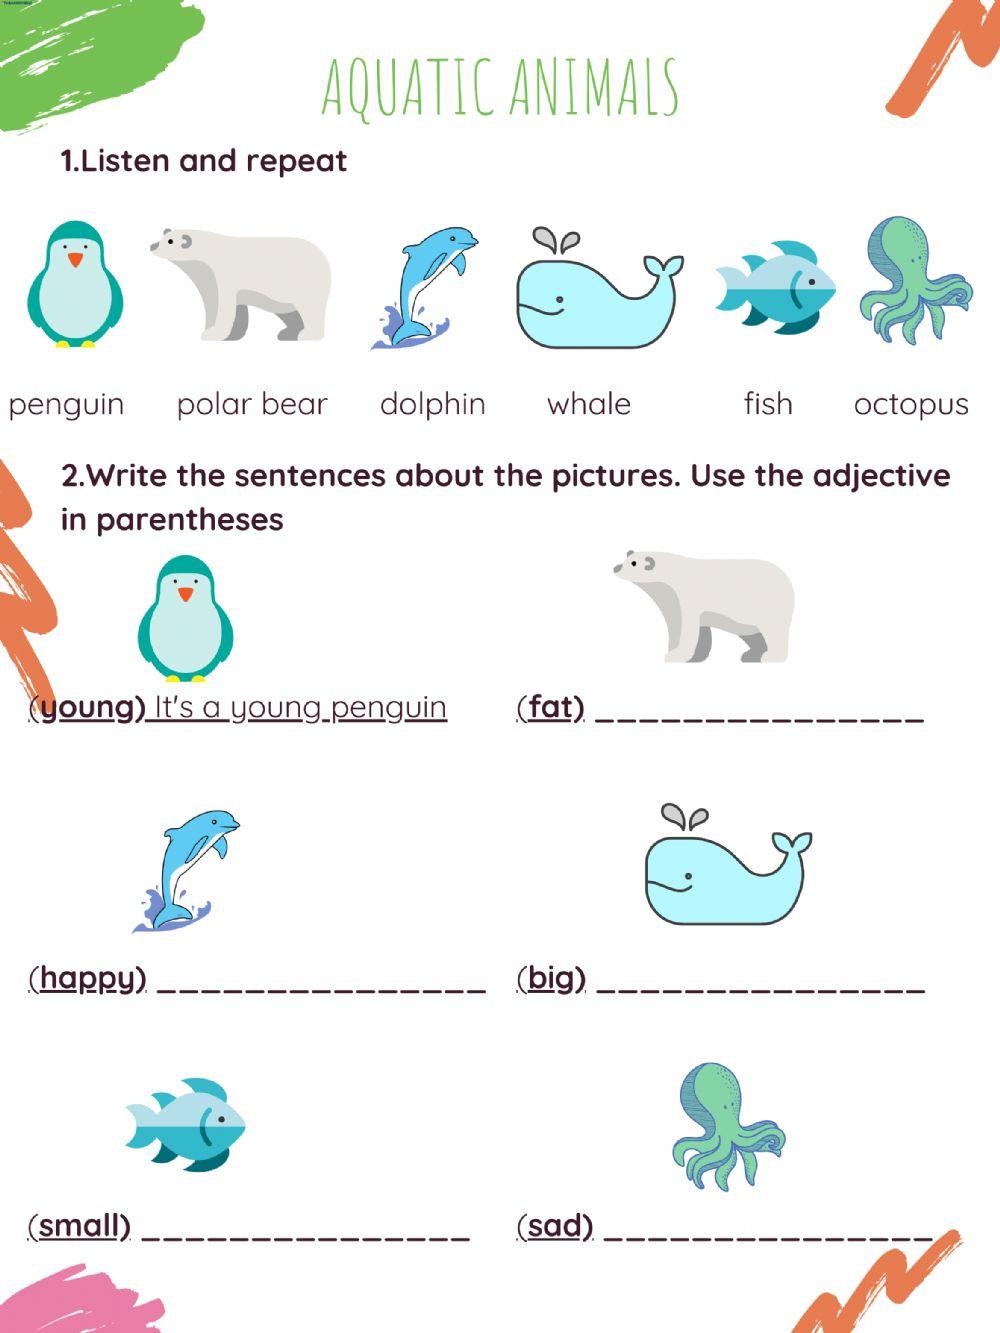 Describing aquatic animals